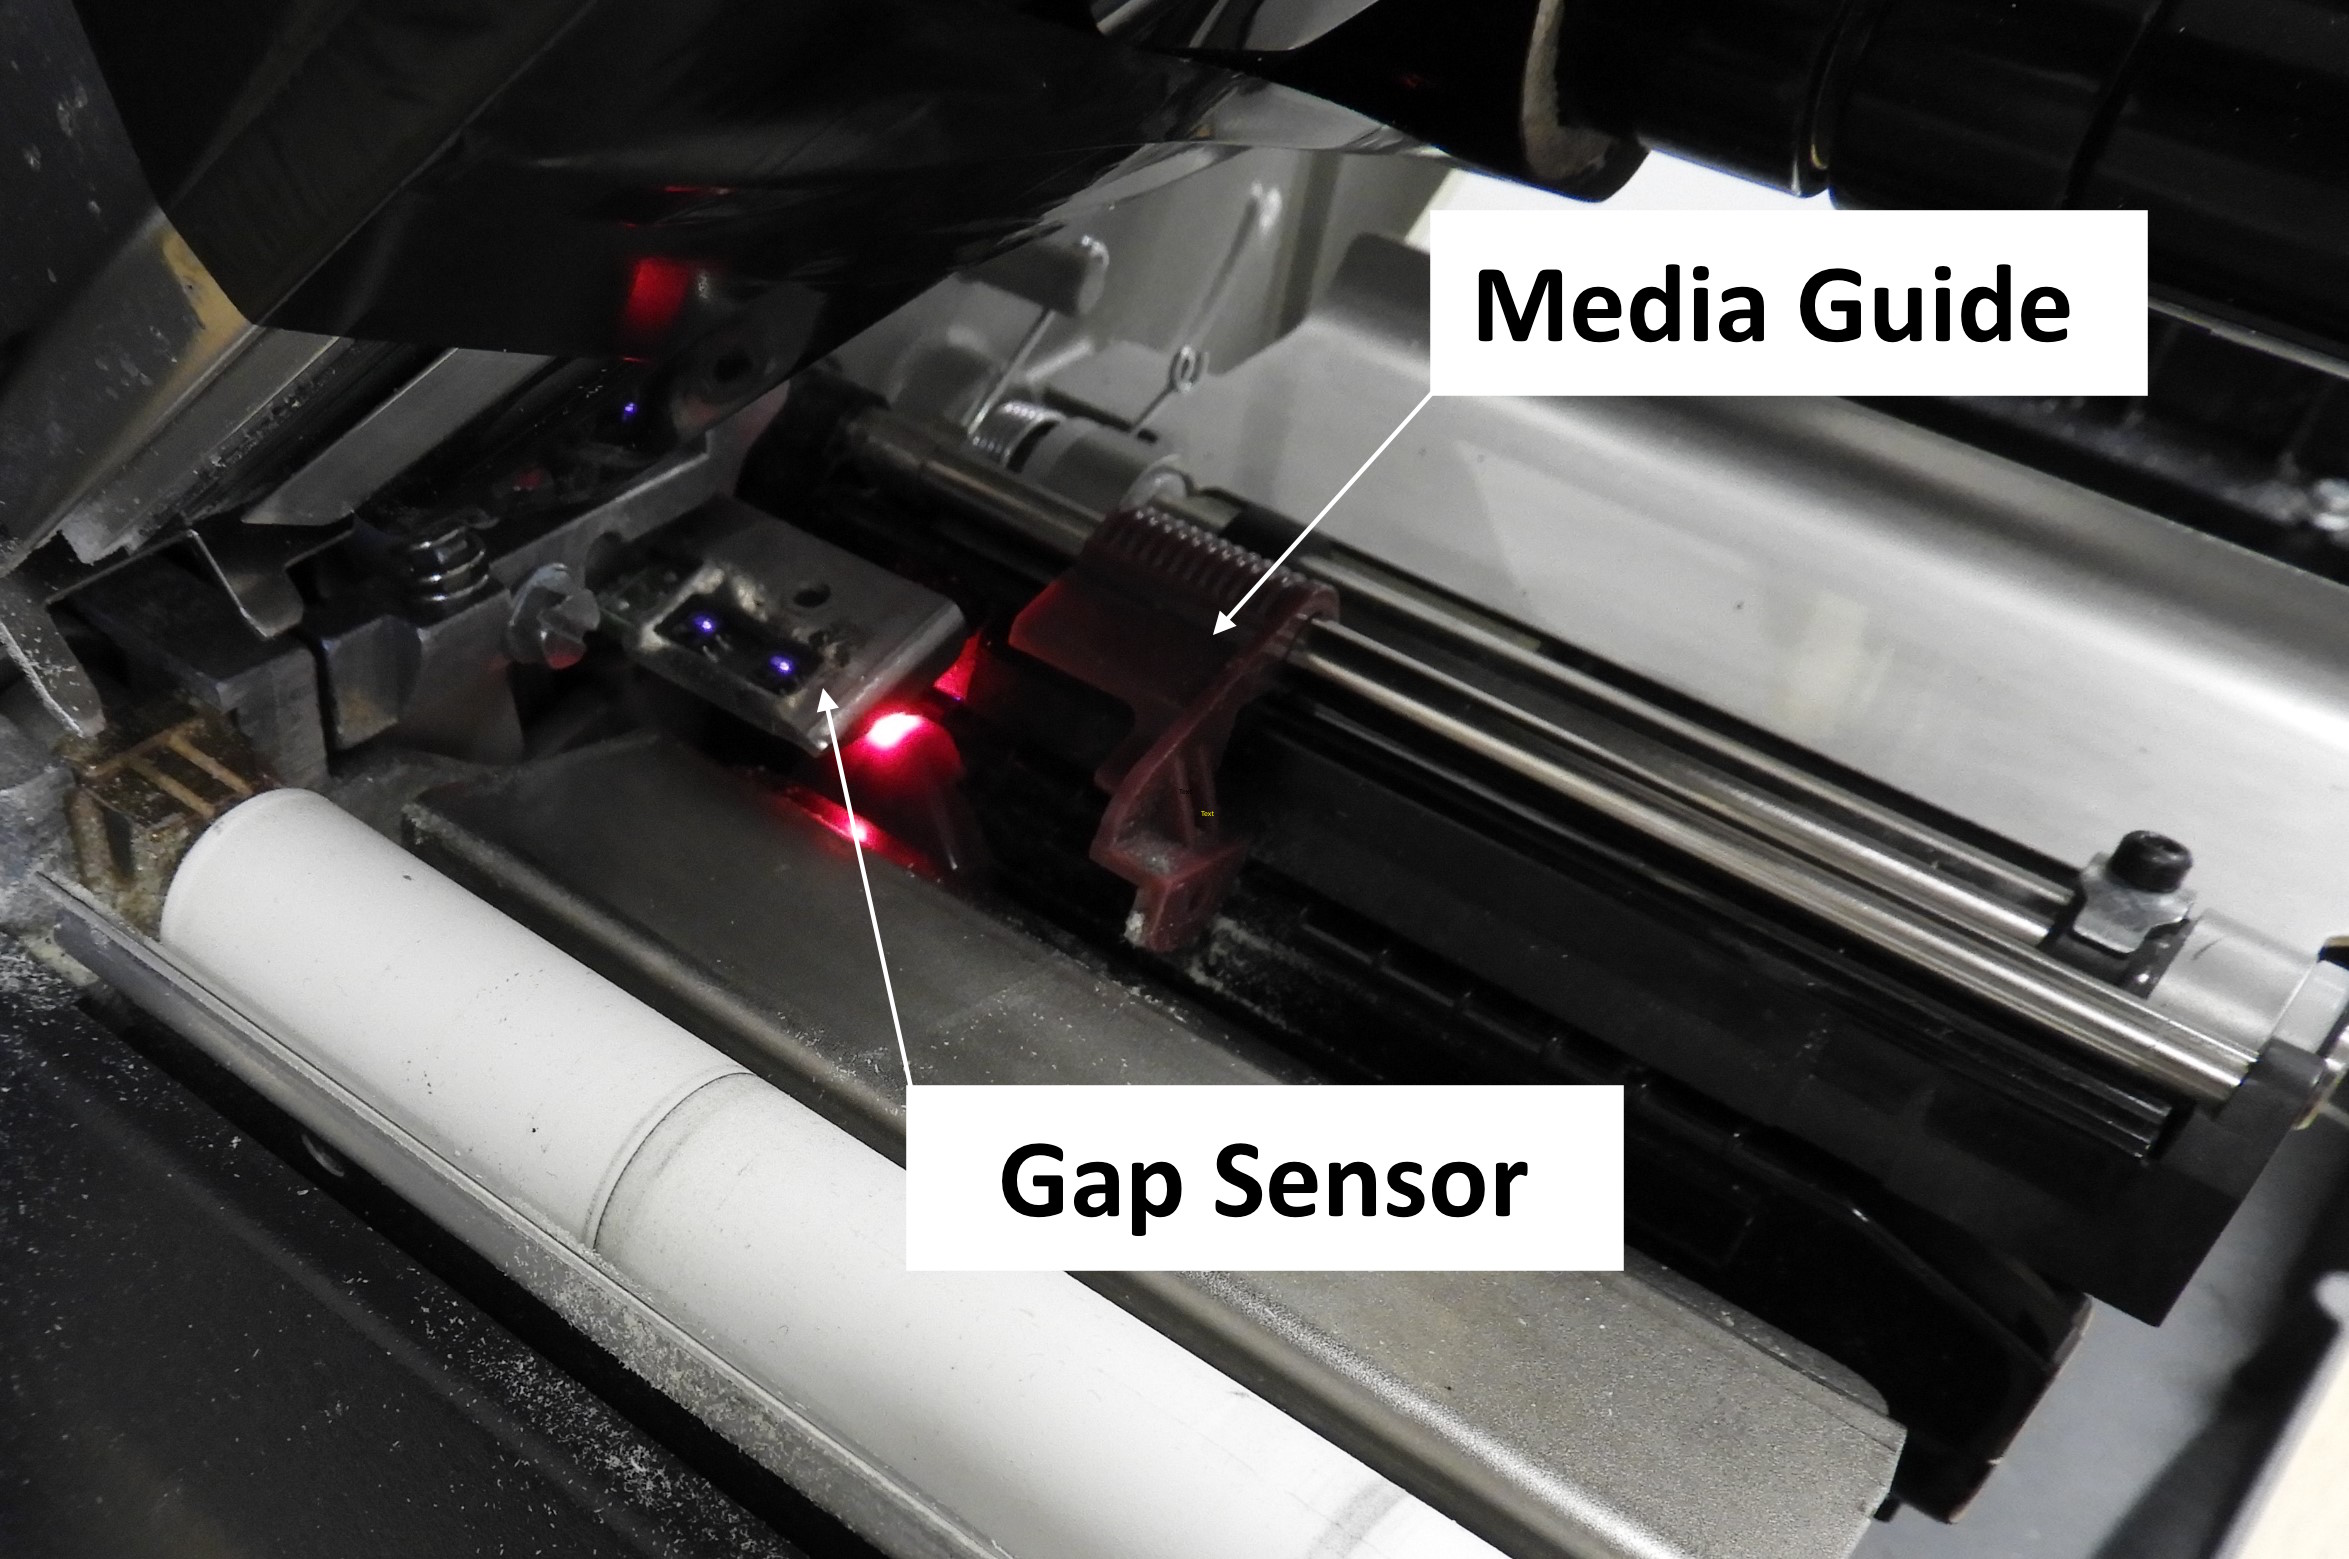 Media Gap Sensor